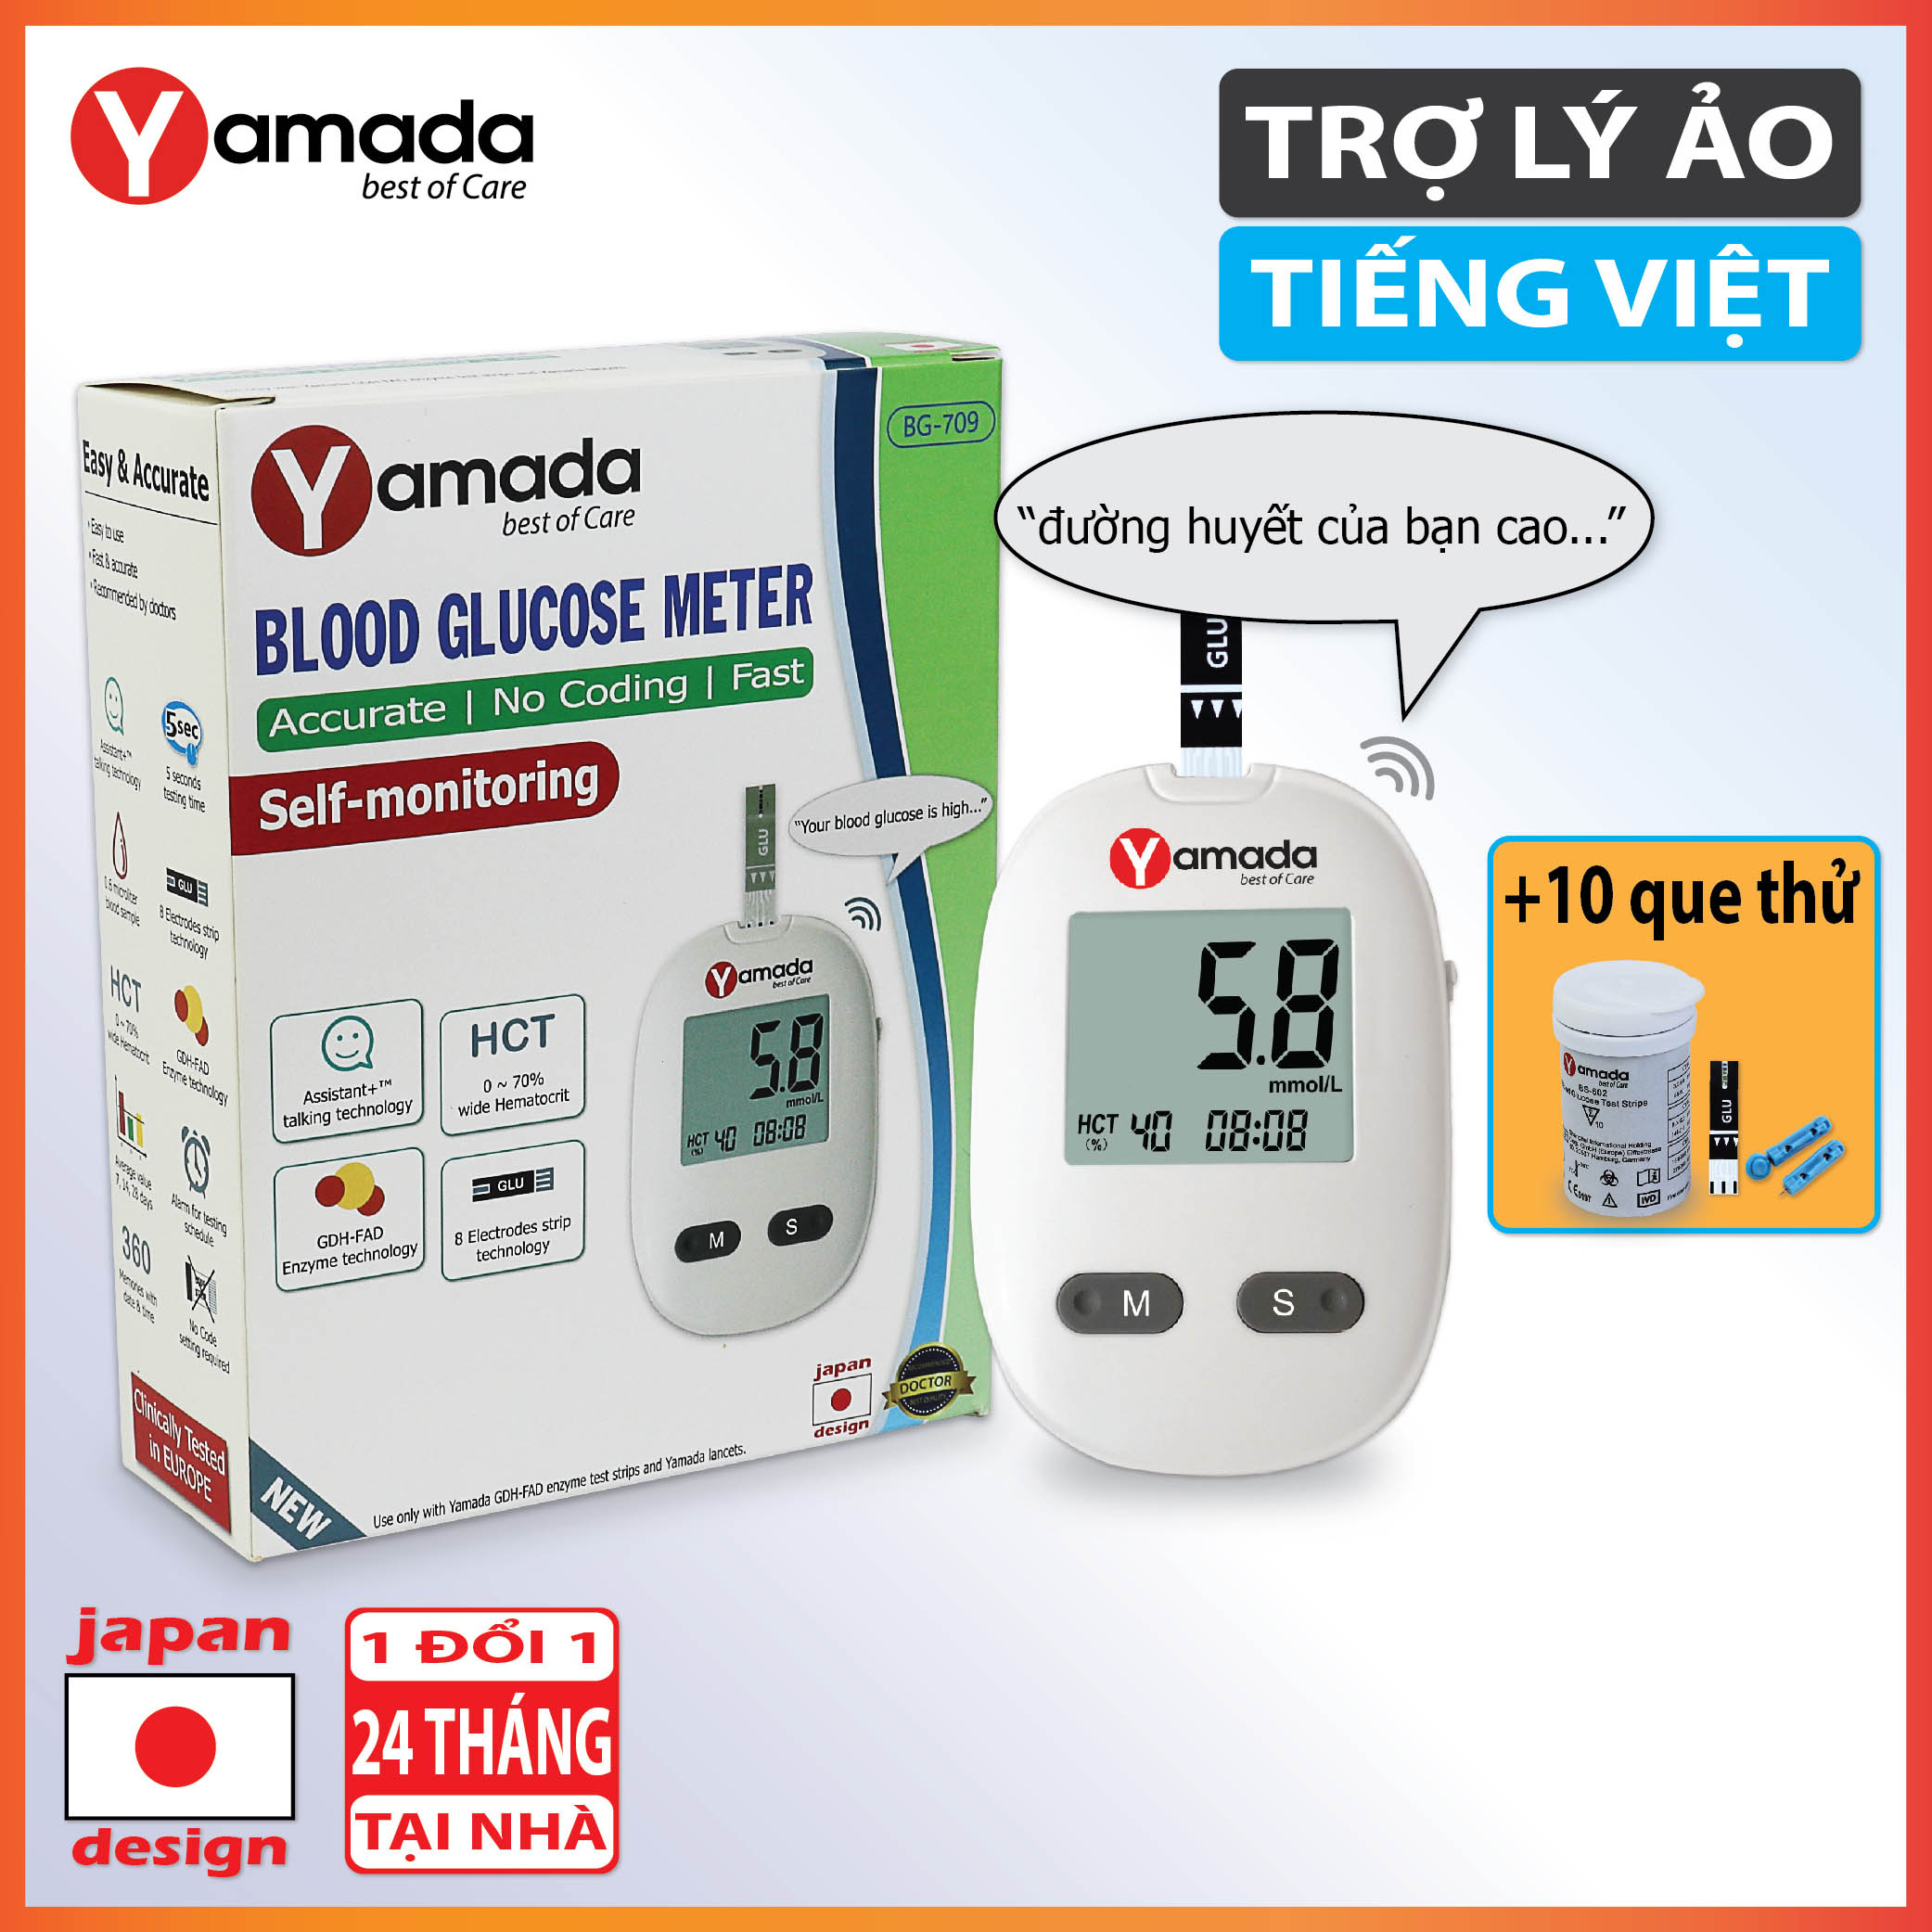 Máy đo đường huyết Yamada - Giọng nói tiếng Việt thông minh, thử tiểu đường